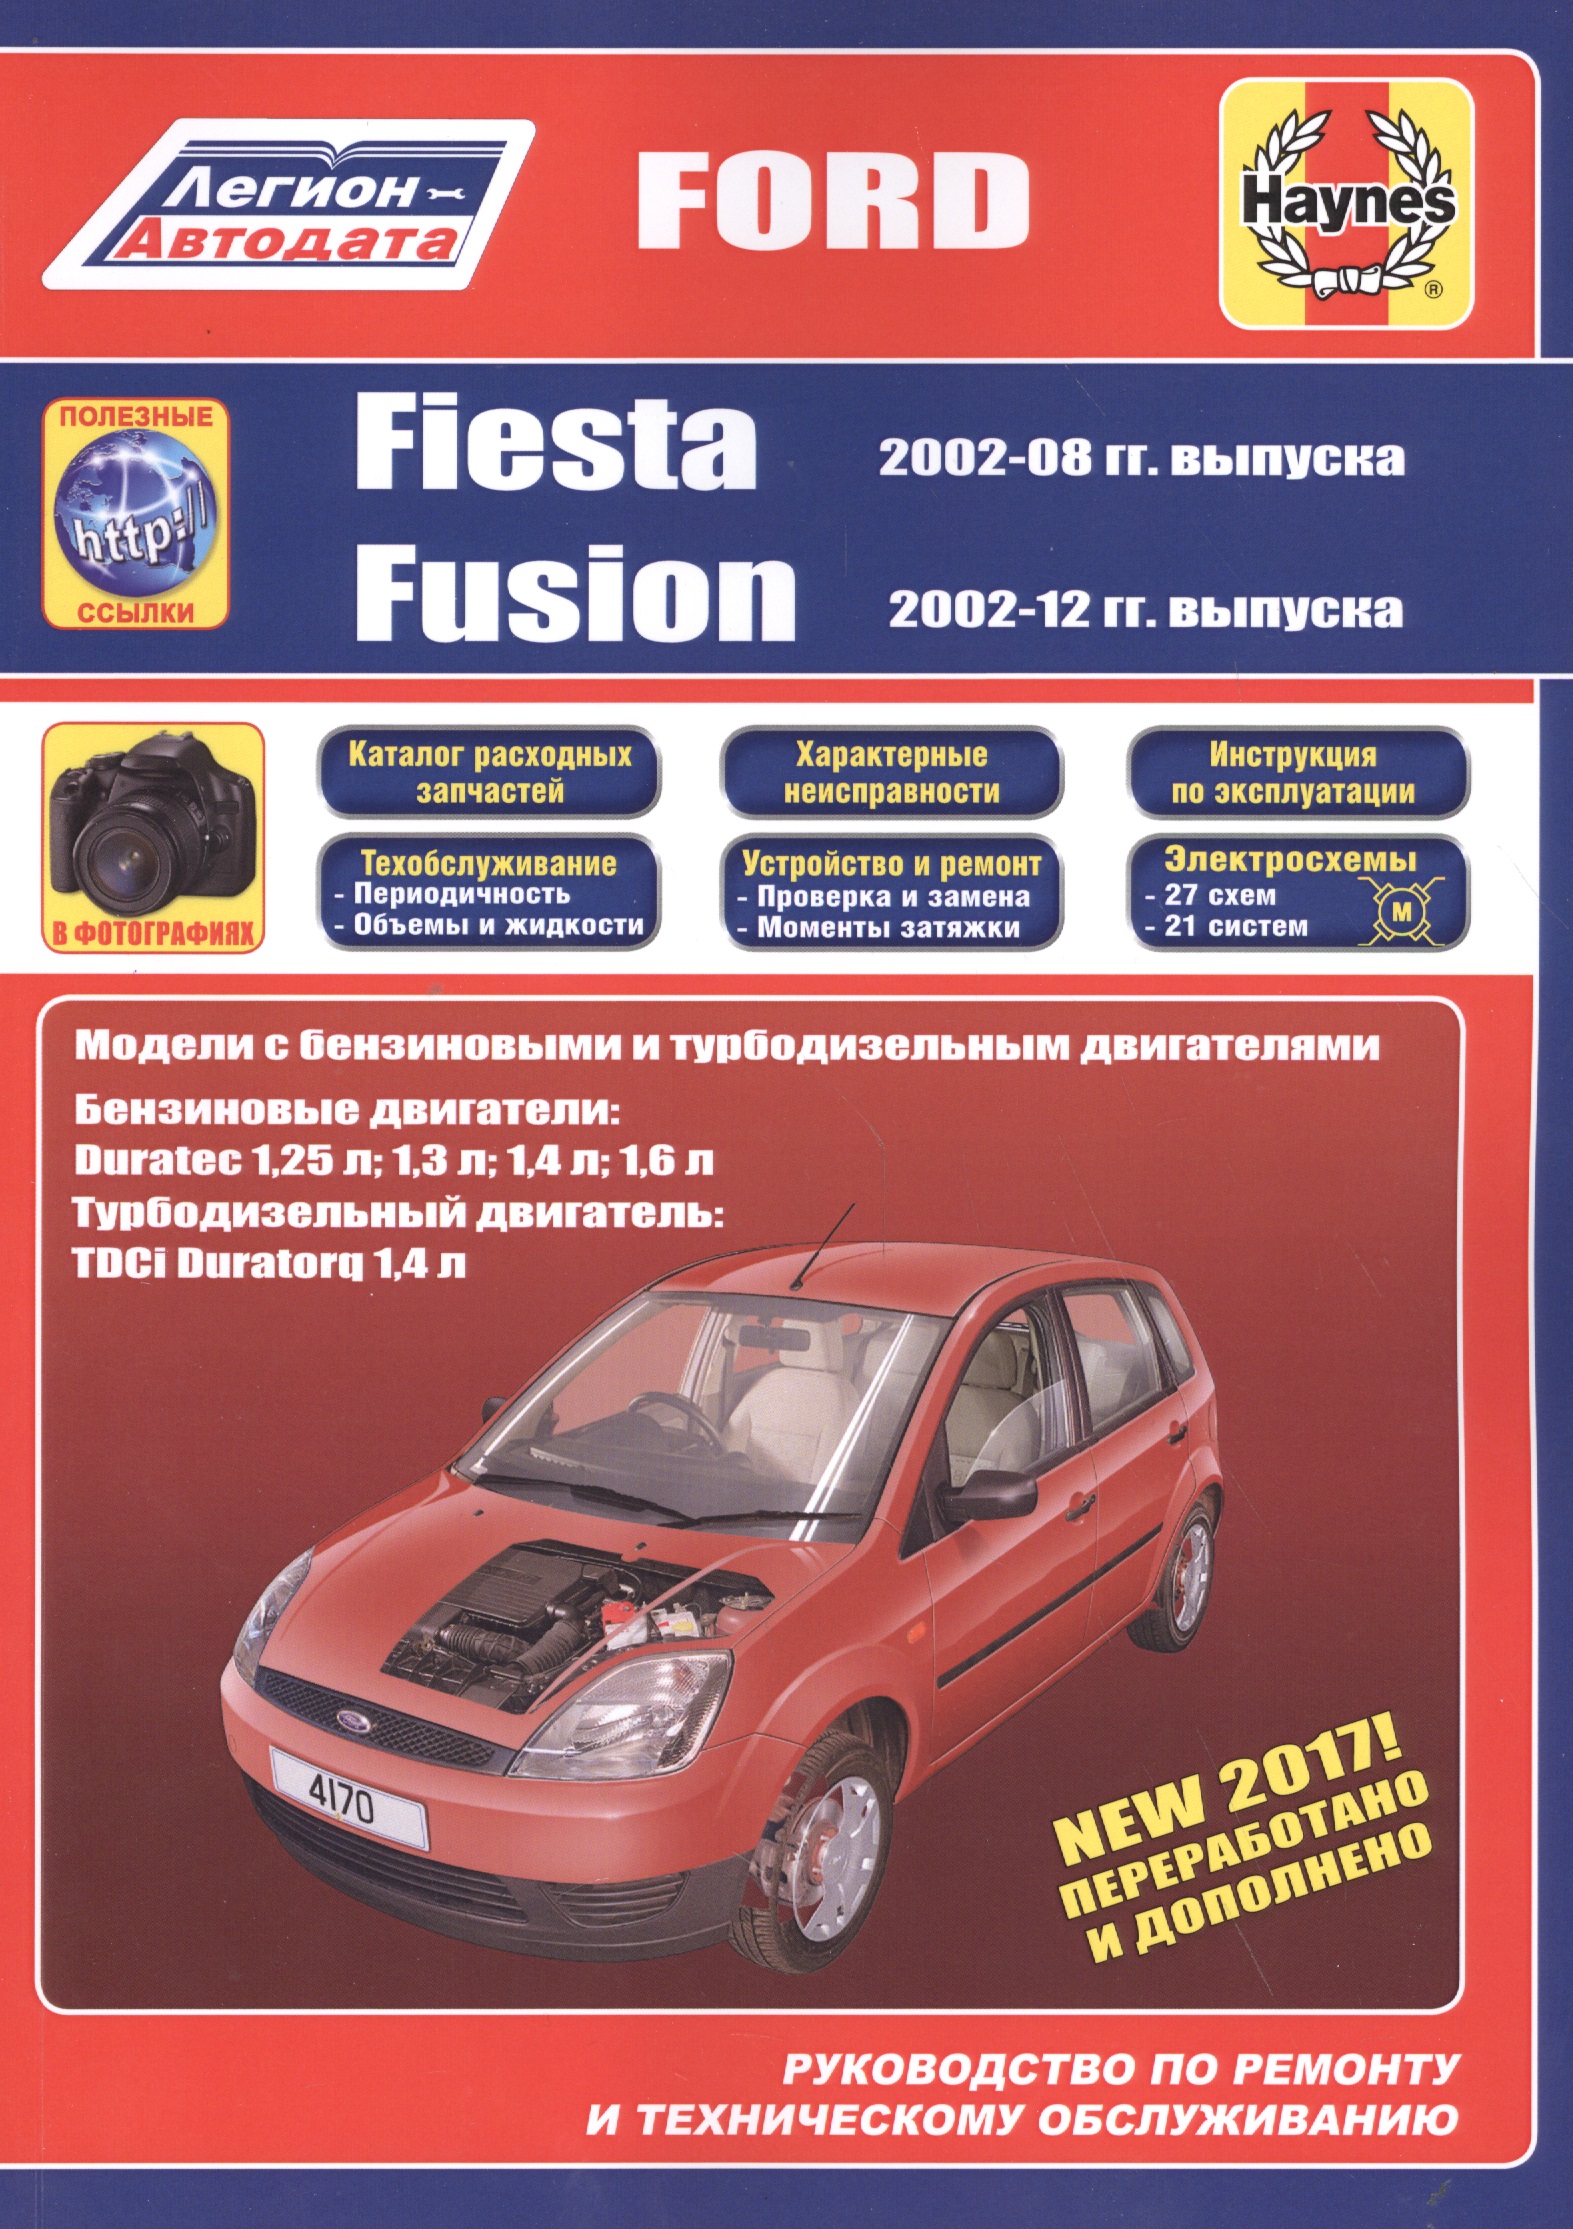 Ford Fiesta & Fusion 2002-08/12 бензин и дизель. Ремонт. Эксплуатация. ТО (ч/б фотографии+Каталог расходных з/ч, Характерные неисправности) cm5t 1a180 aa для ford fiesta fusion taurus flex edge fiesta lincoln mkc mks mkt mkx mkz tpms датчик давления в шинах cm5t1a180aa